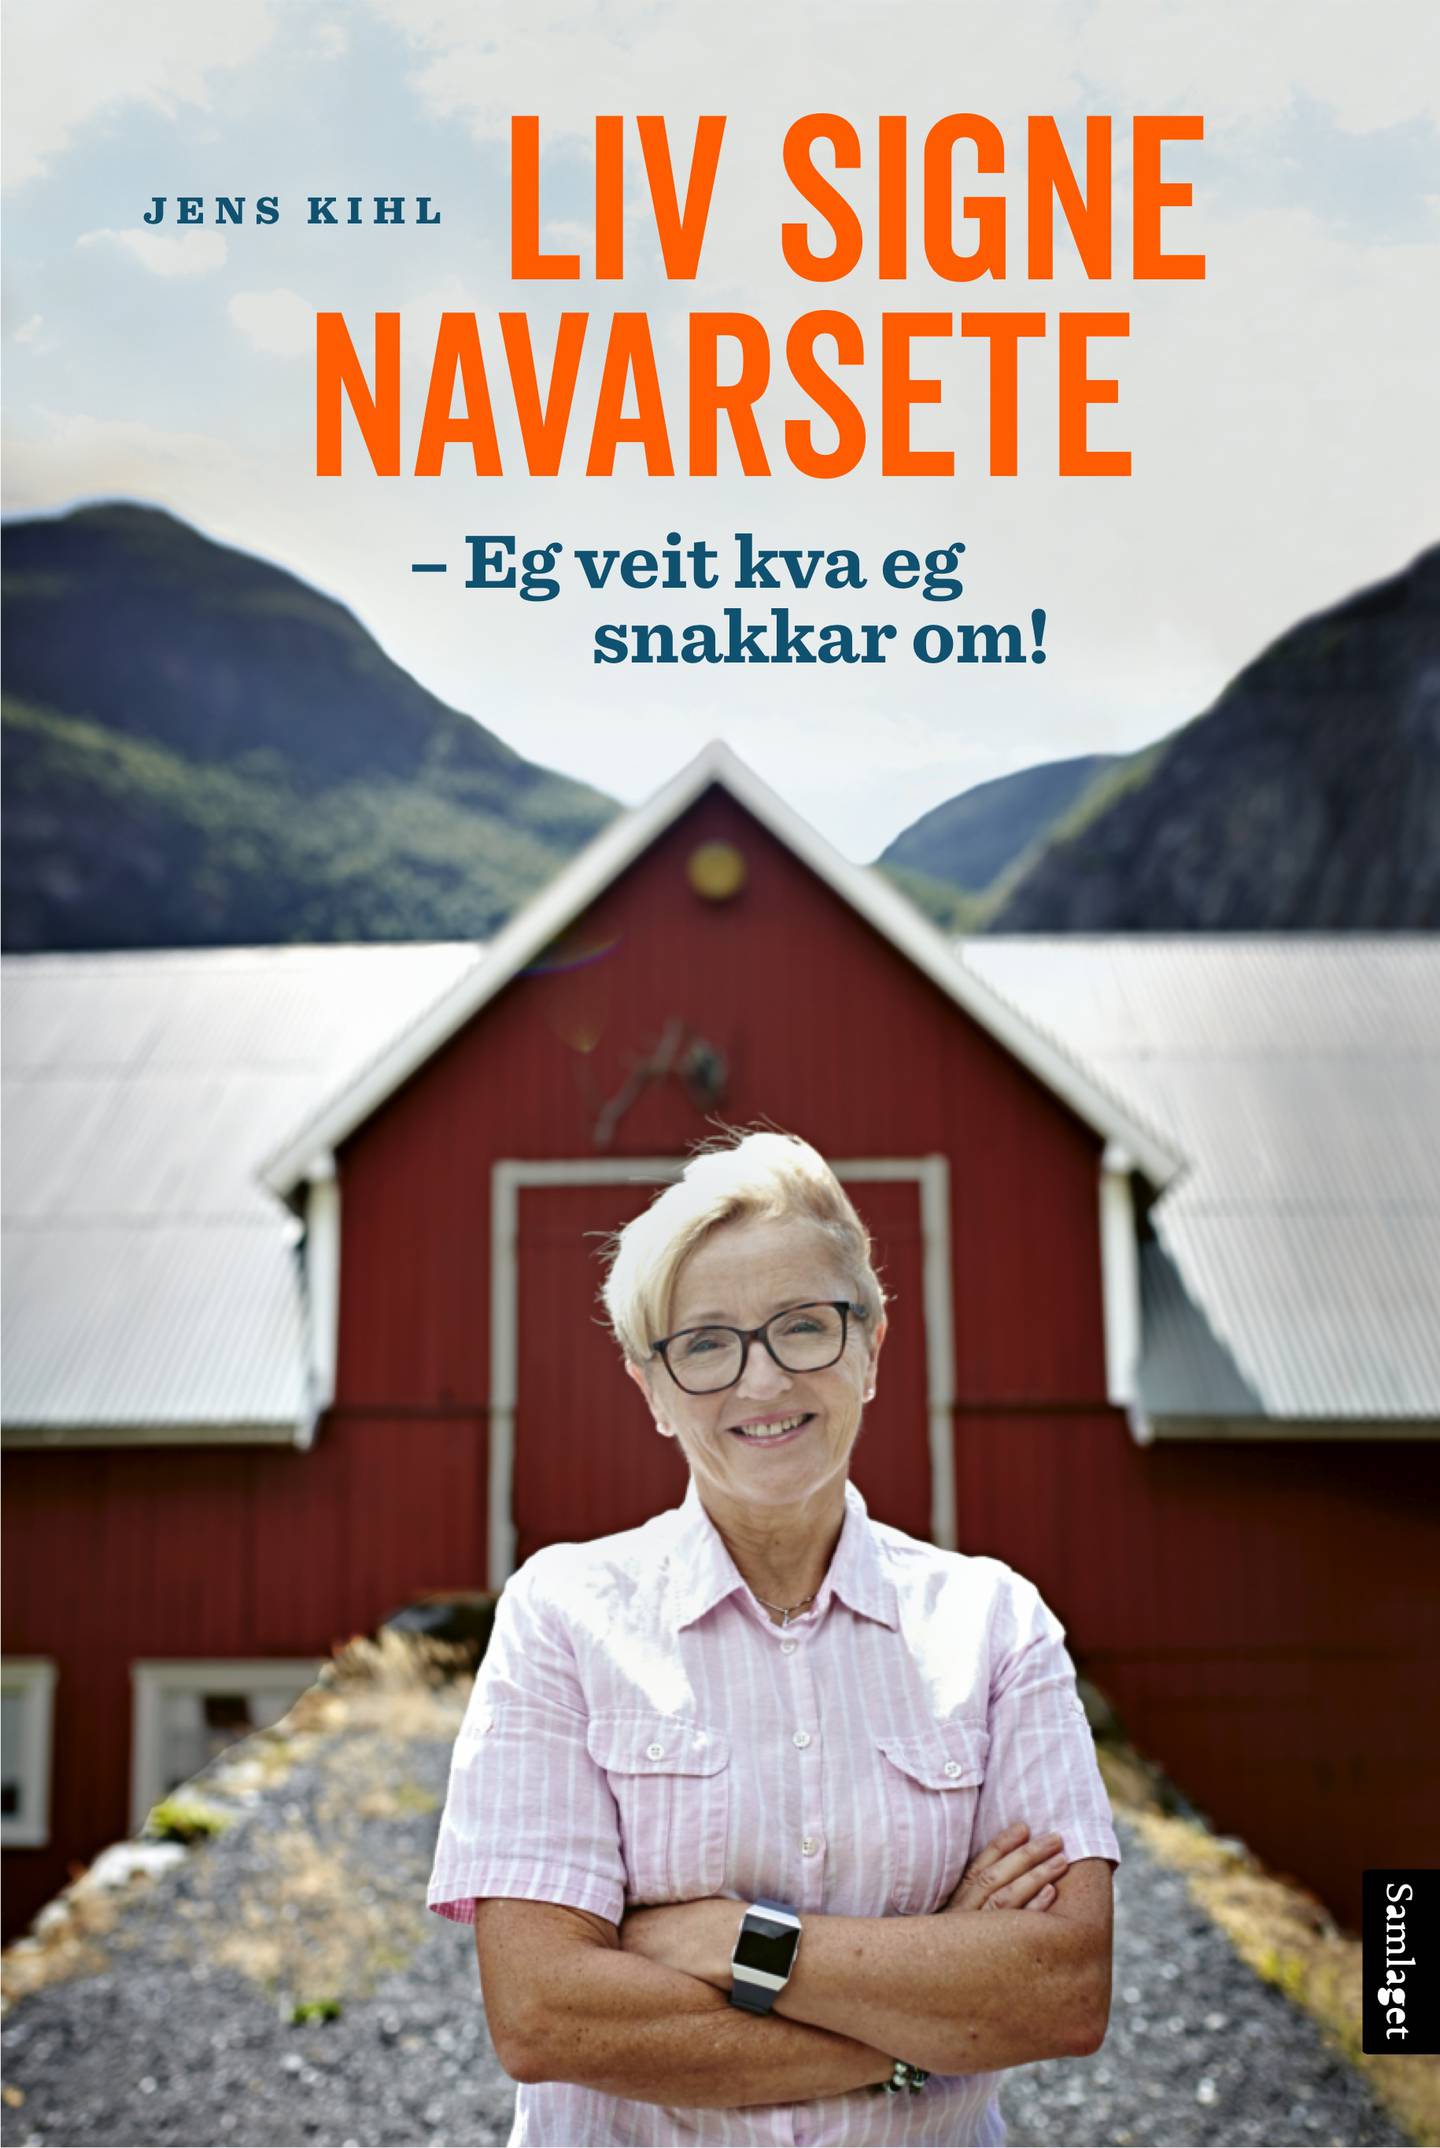 Biografien om Liv Signe Navarsete: «Eg veit kva eg snakkar om», er ført i pennen av forfatter og kommentator Jens Kihl